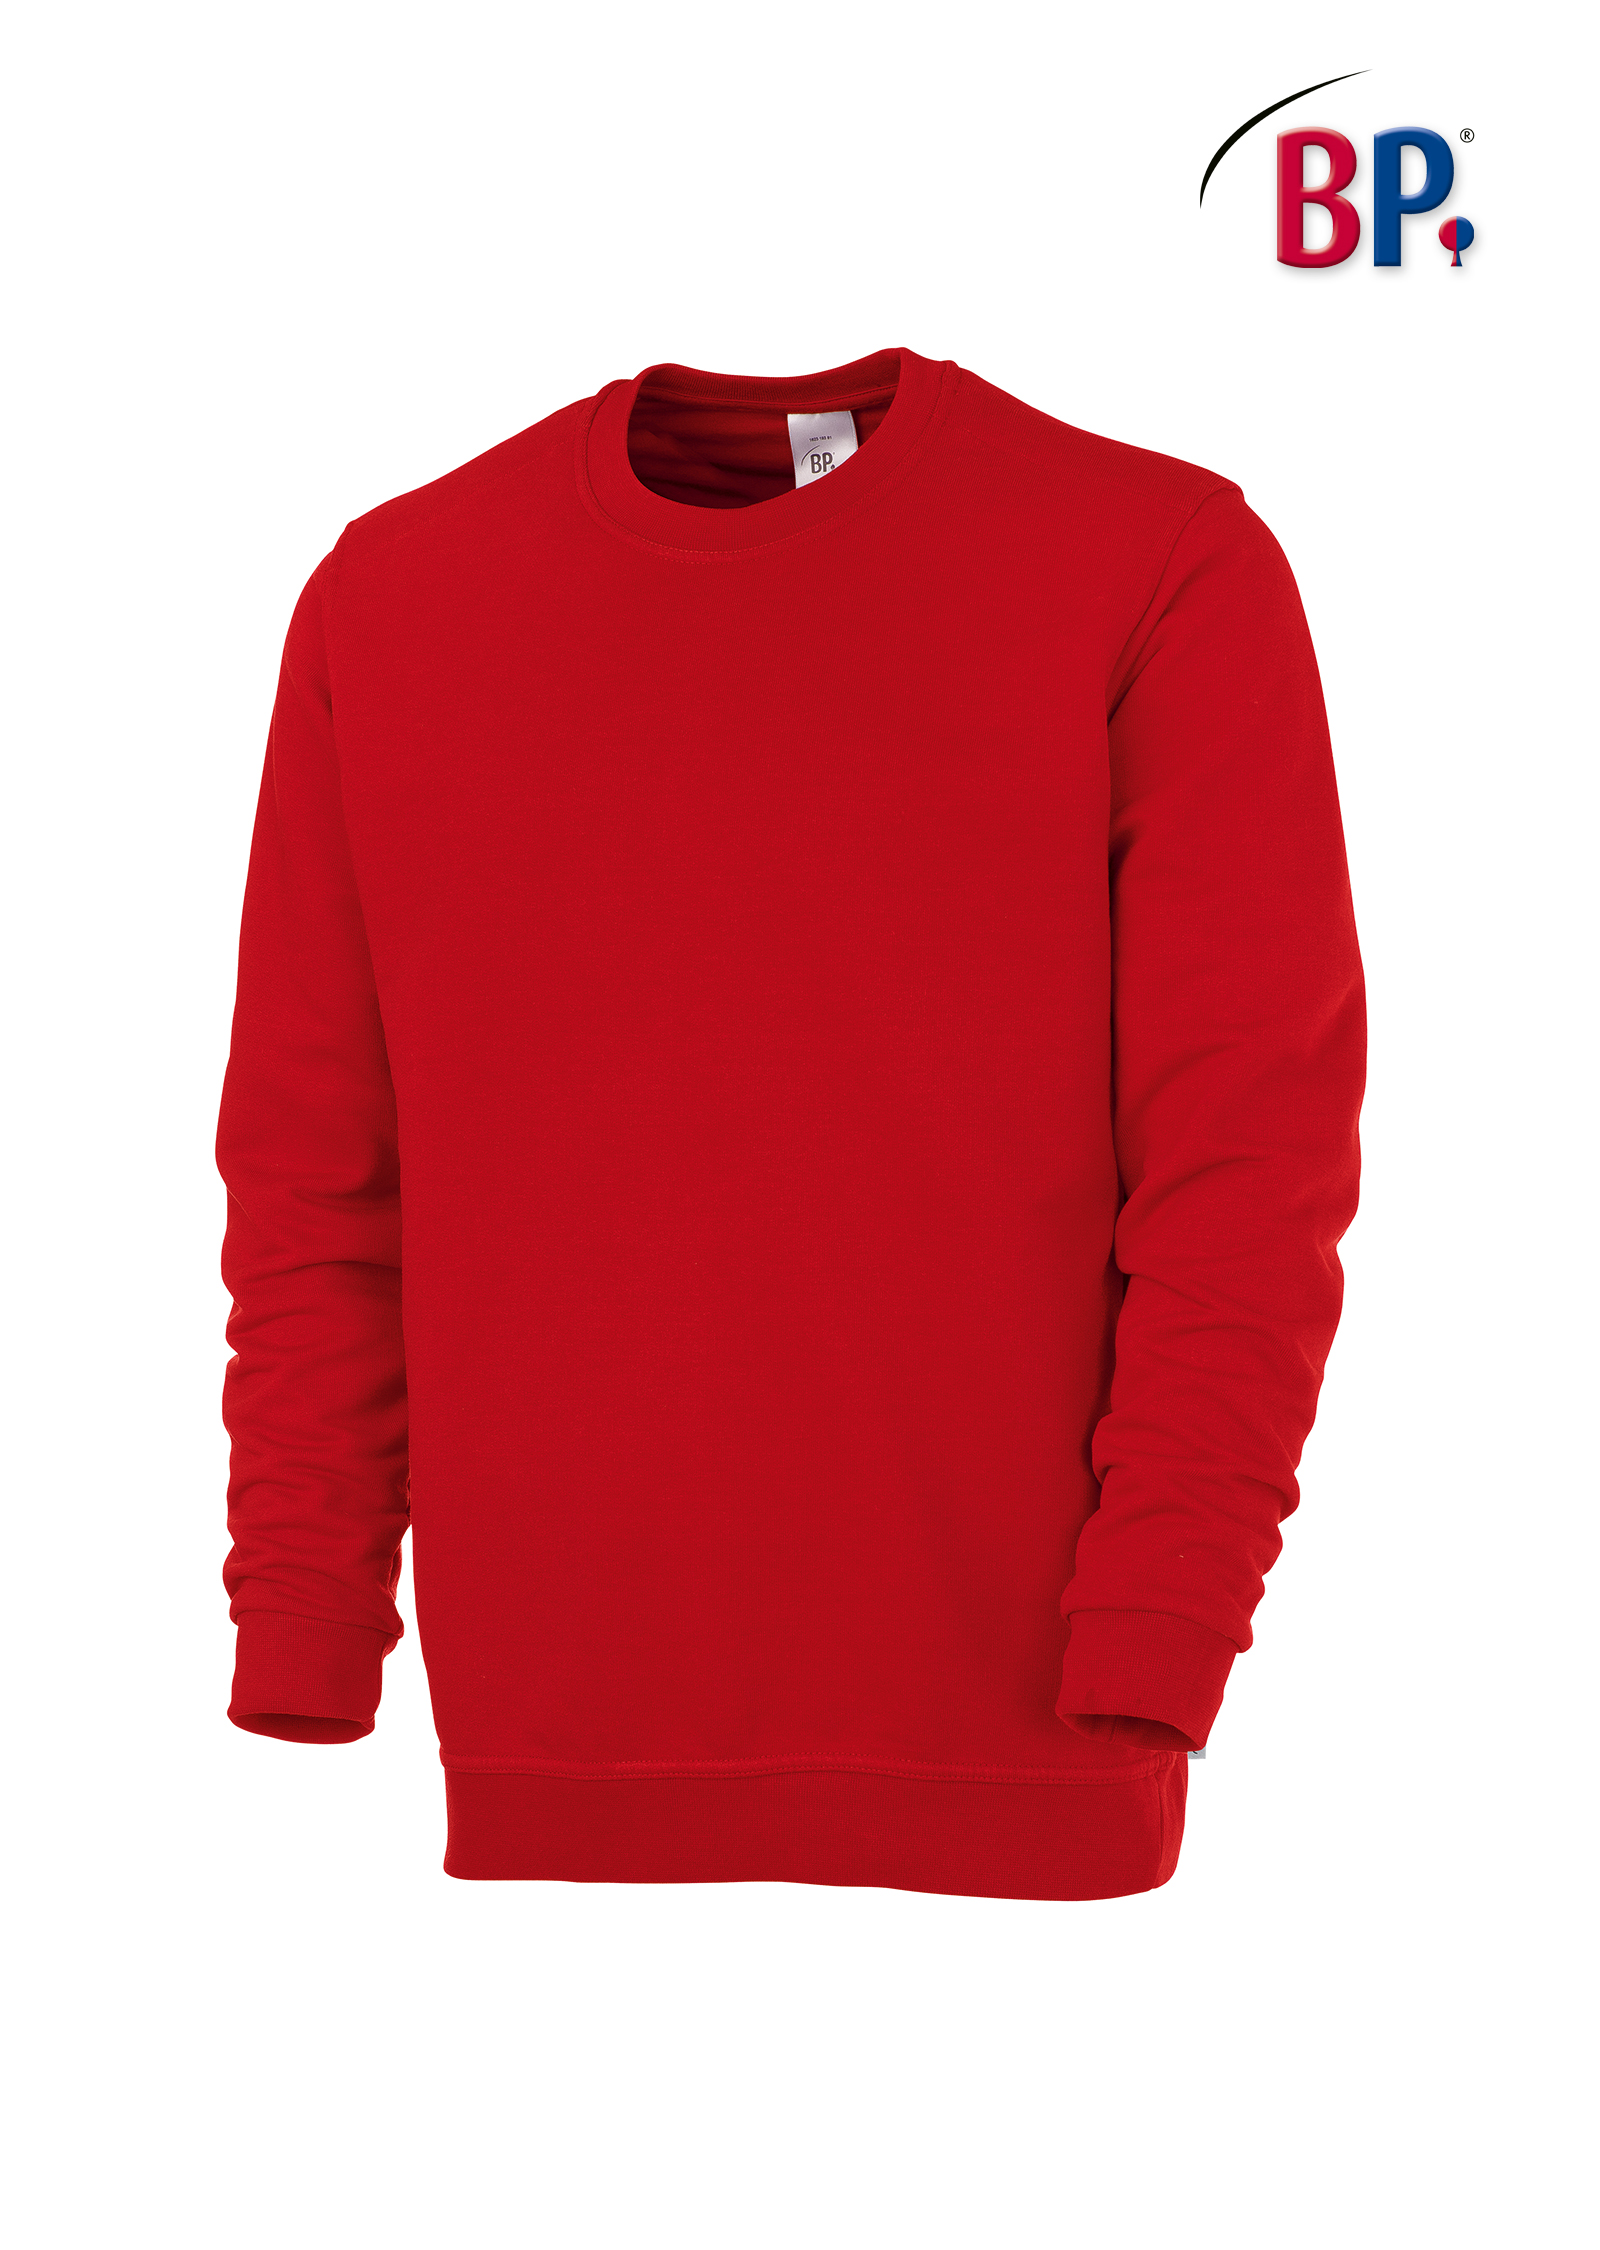 BP® Sweatshirt für Sie & Ihn - 1623